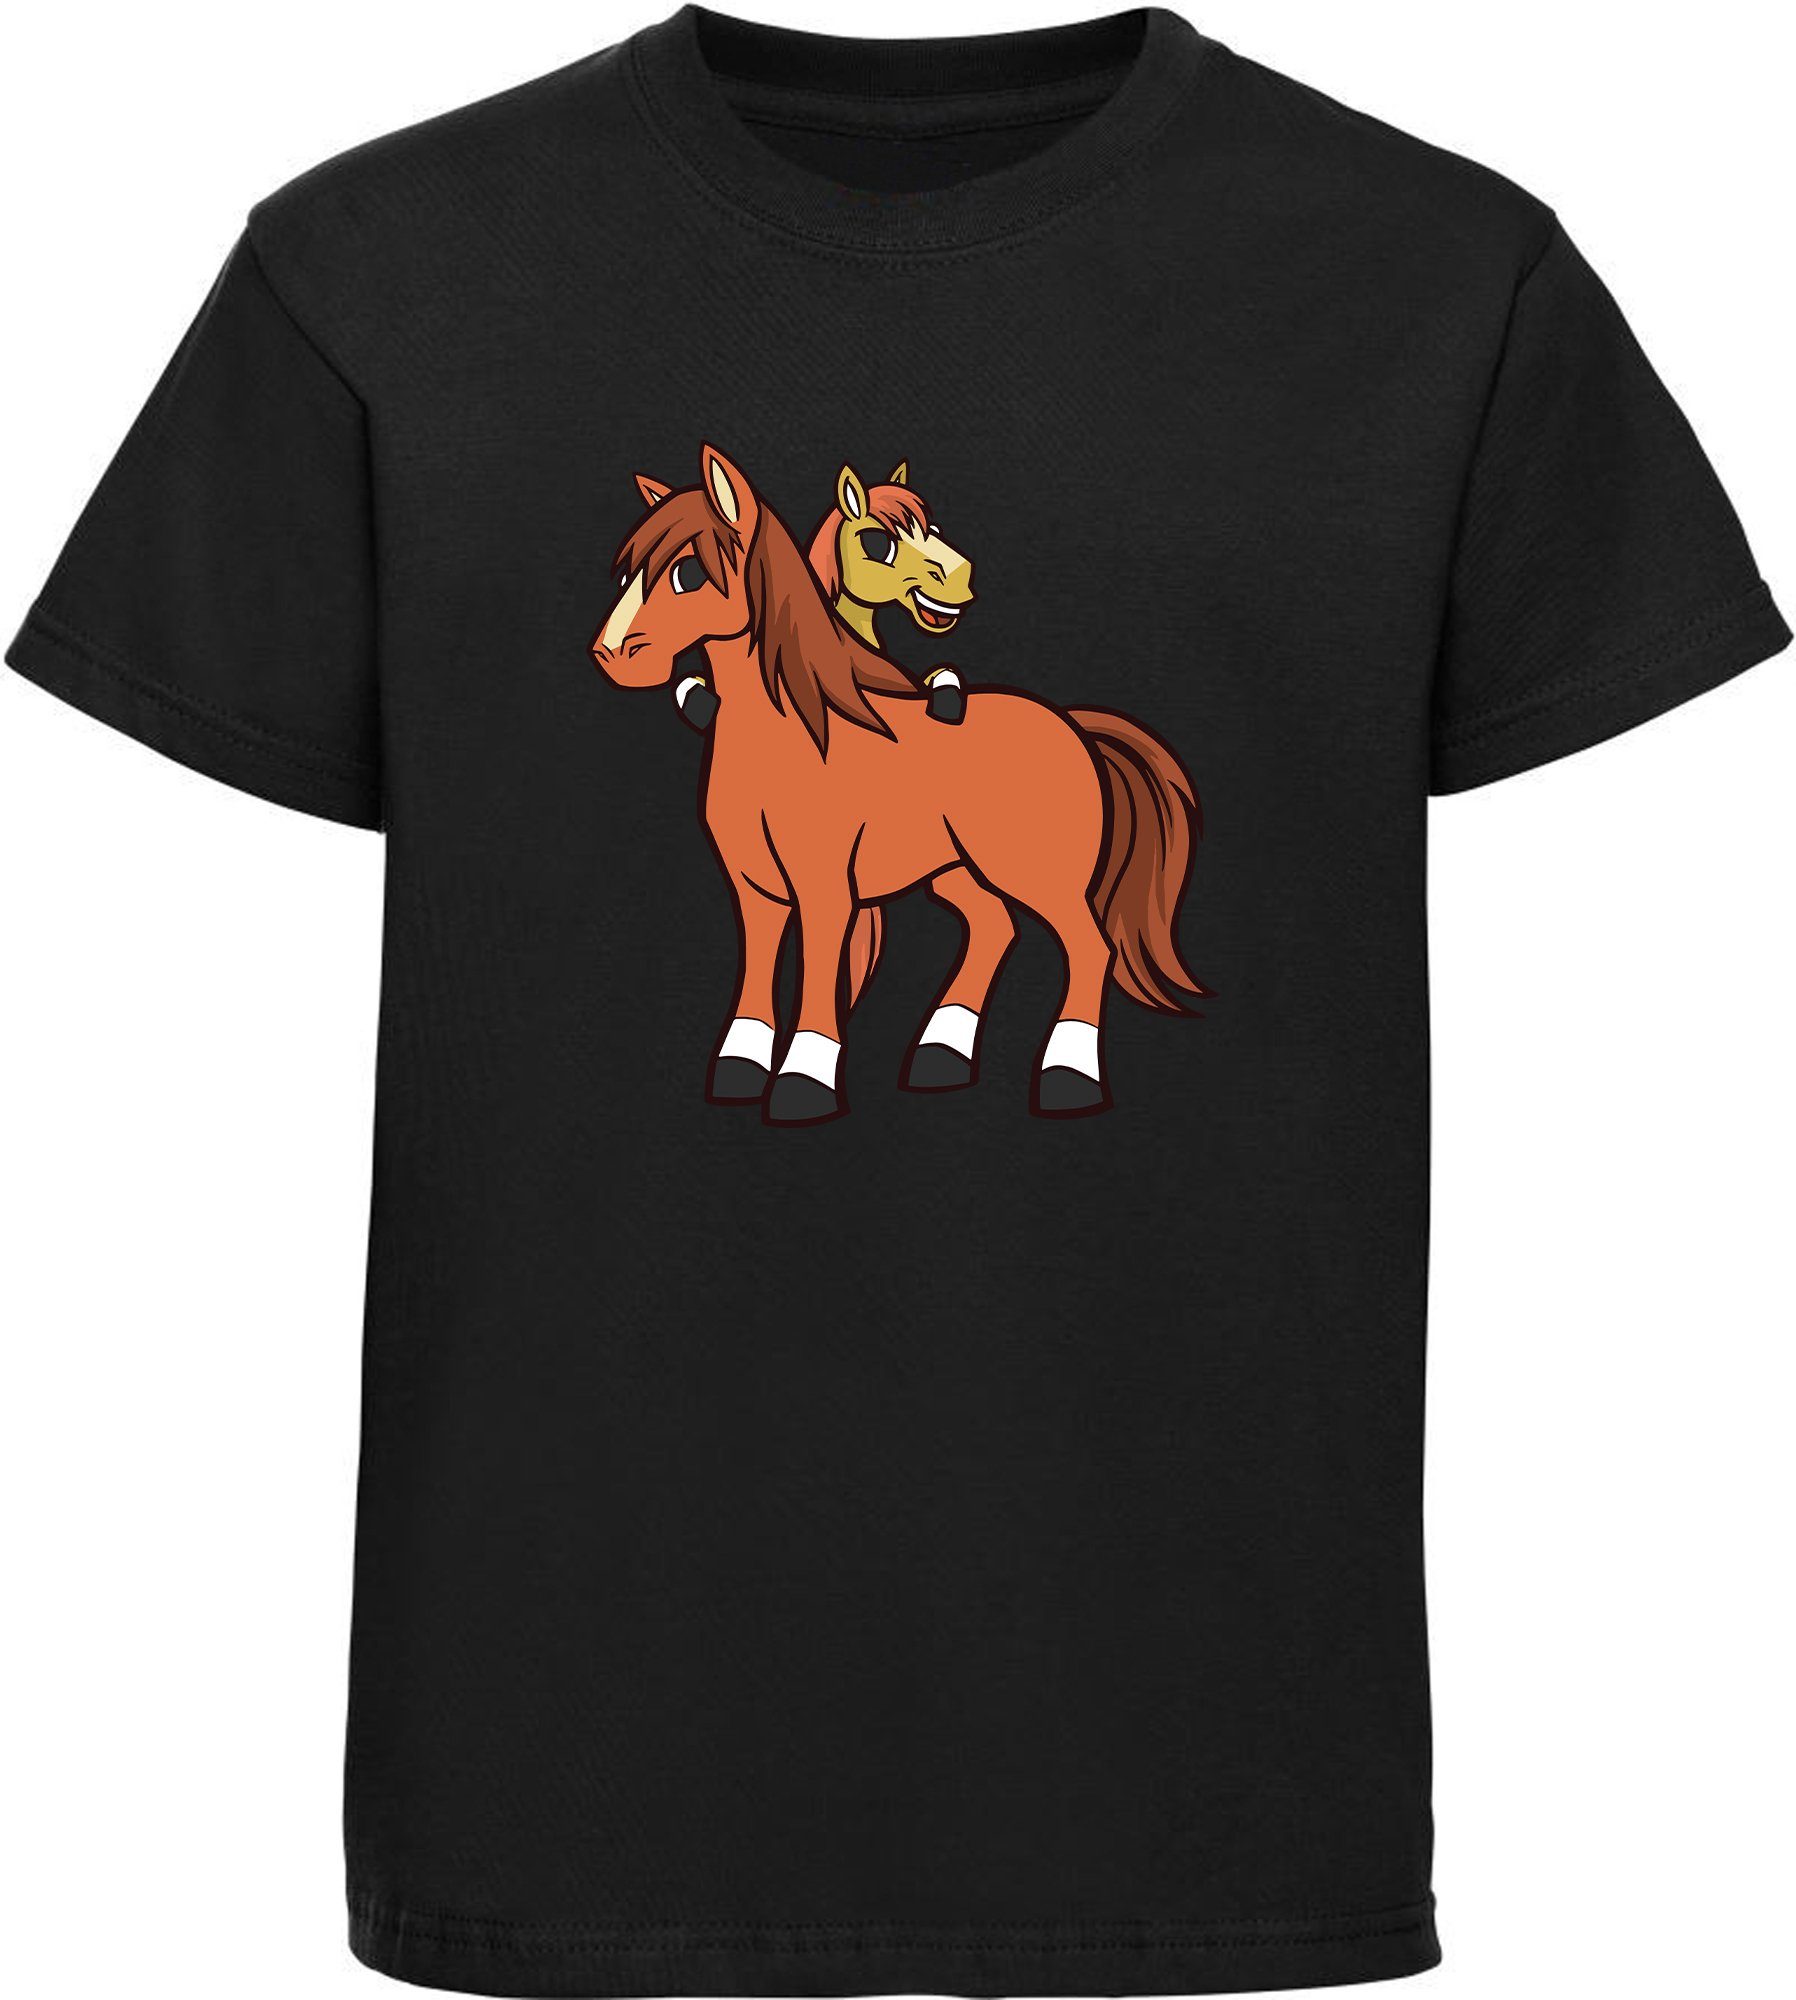 MyDesign24 T-Shirt bedruckt mit schwarz Shirt Baumwollshirt Kinder Aufdruck, Pferde Pferde - i251 2 cartoon Print